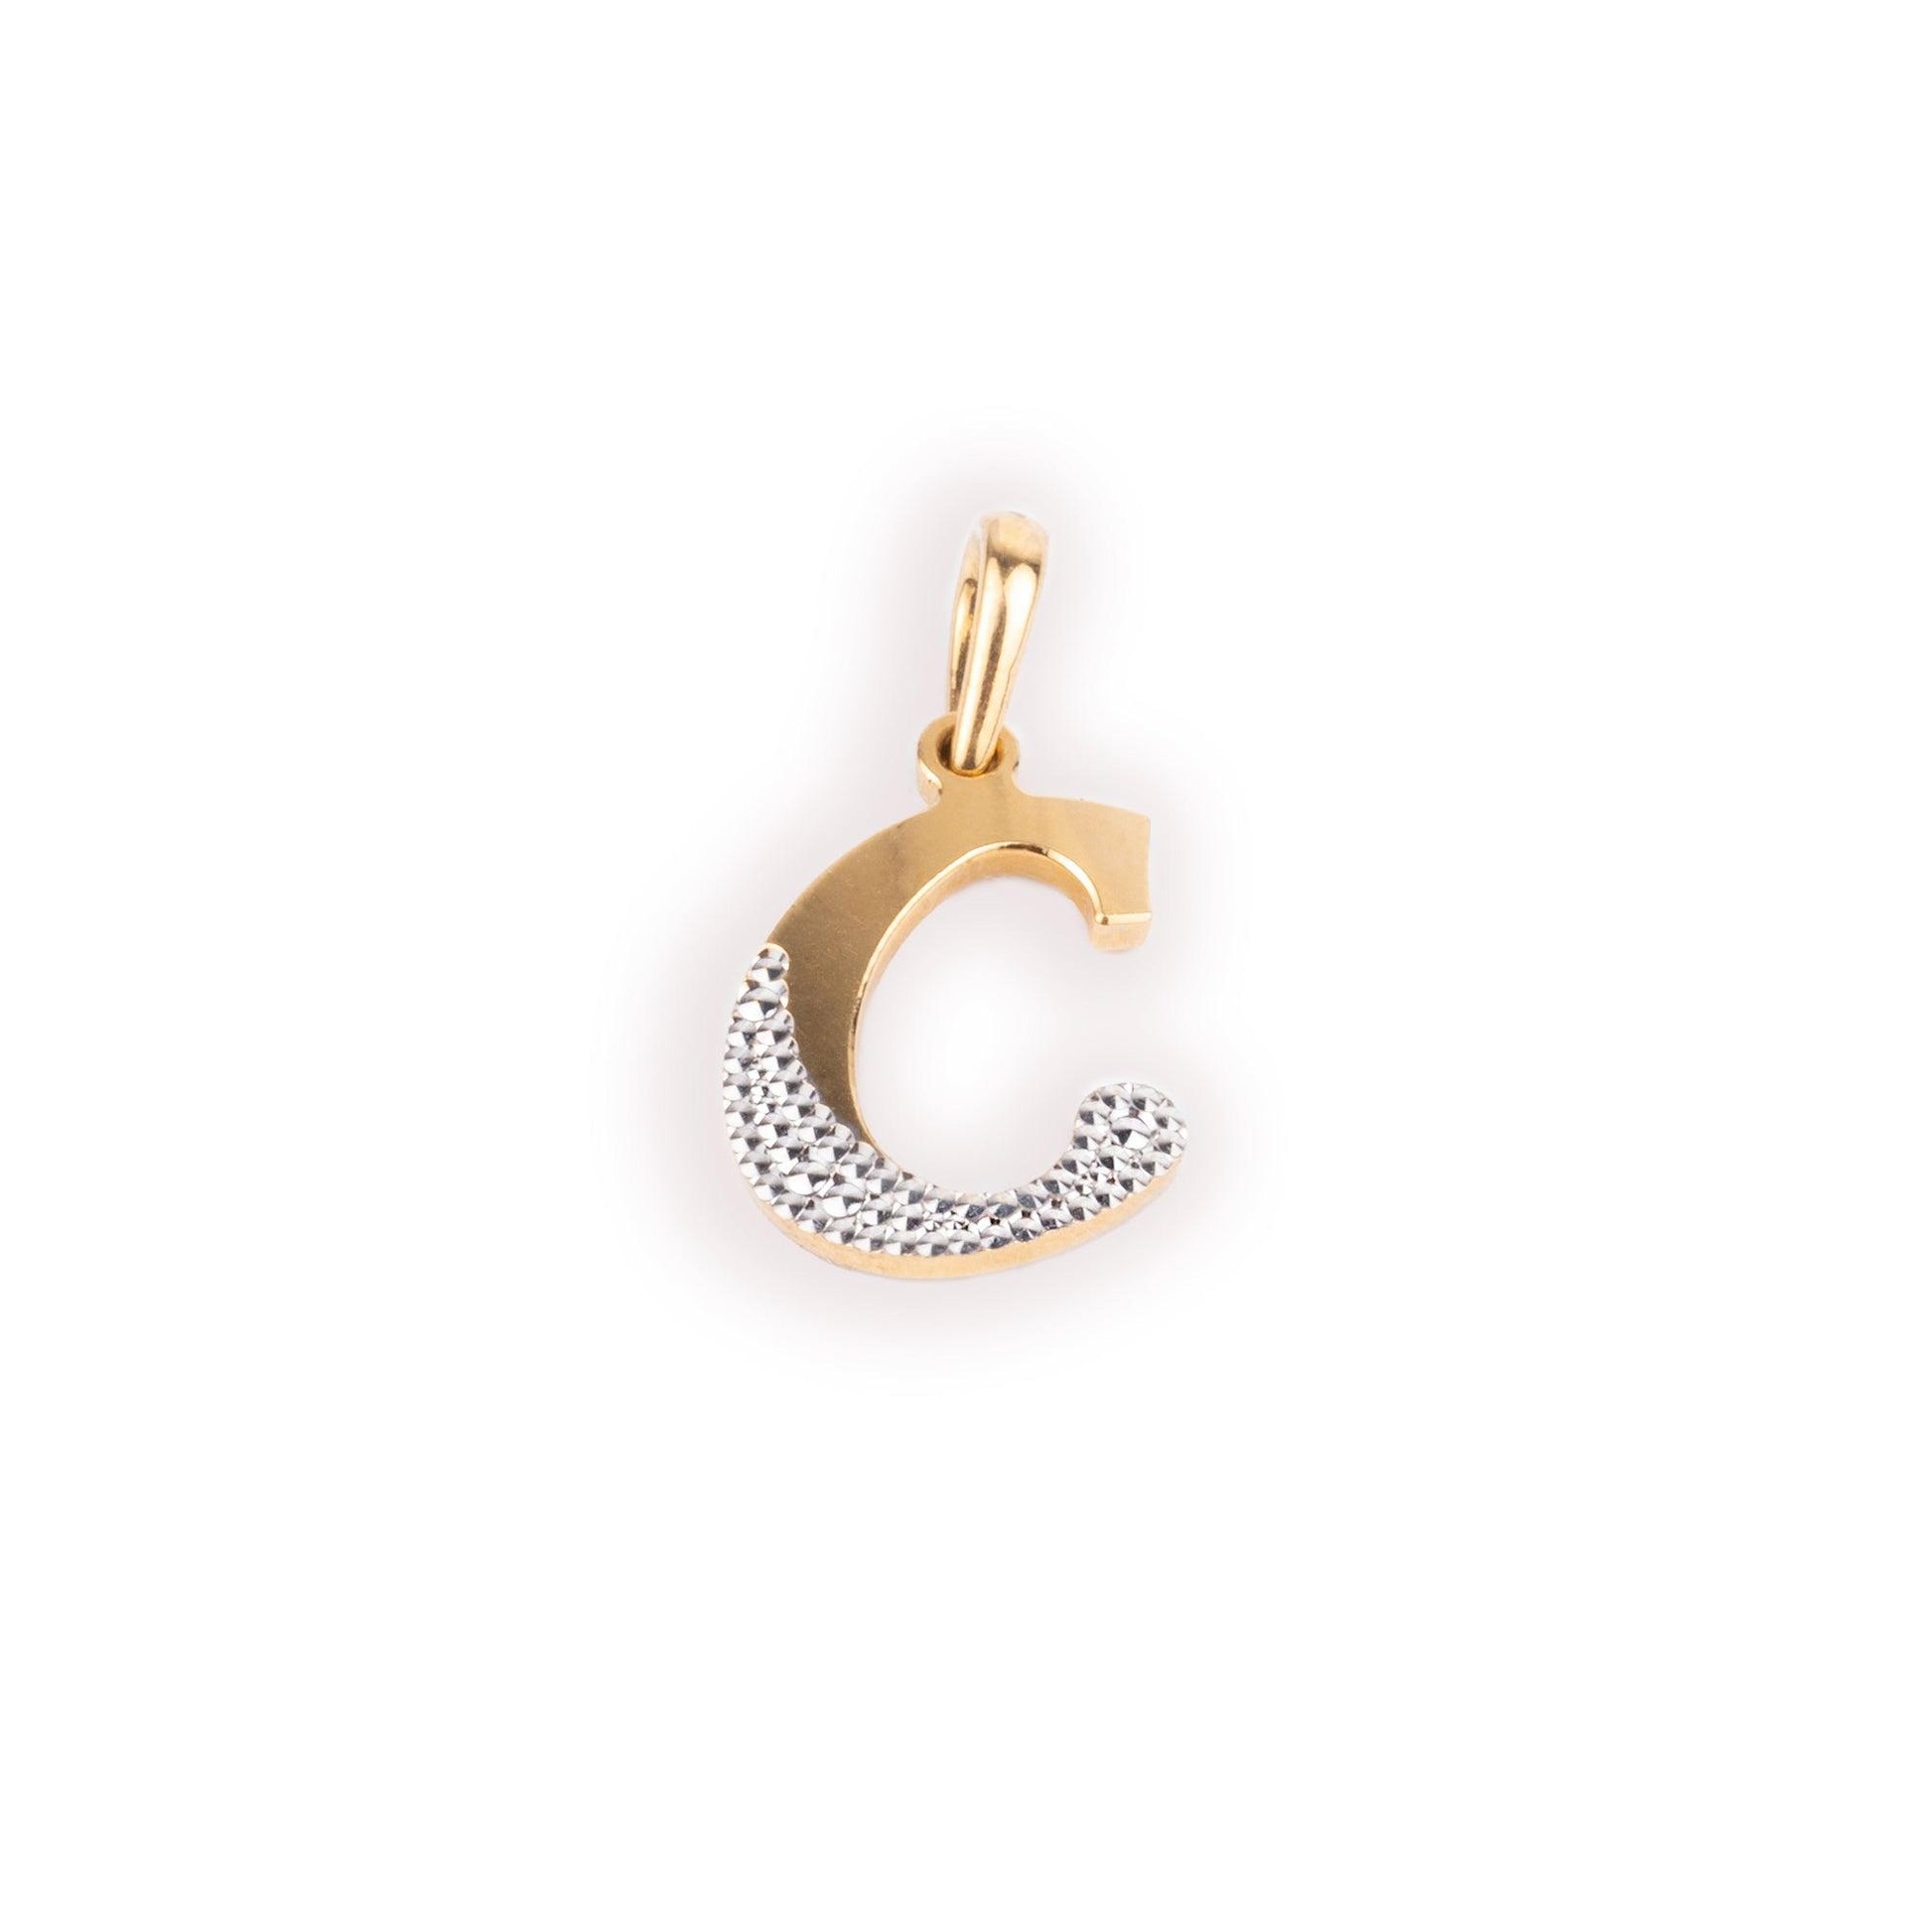 'C' 22ct Gold Initial Pendant with Rhodium Design P-7040R-C - Minar Jewellers